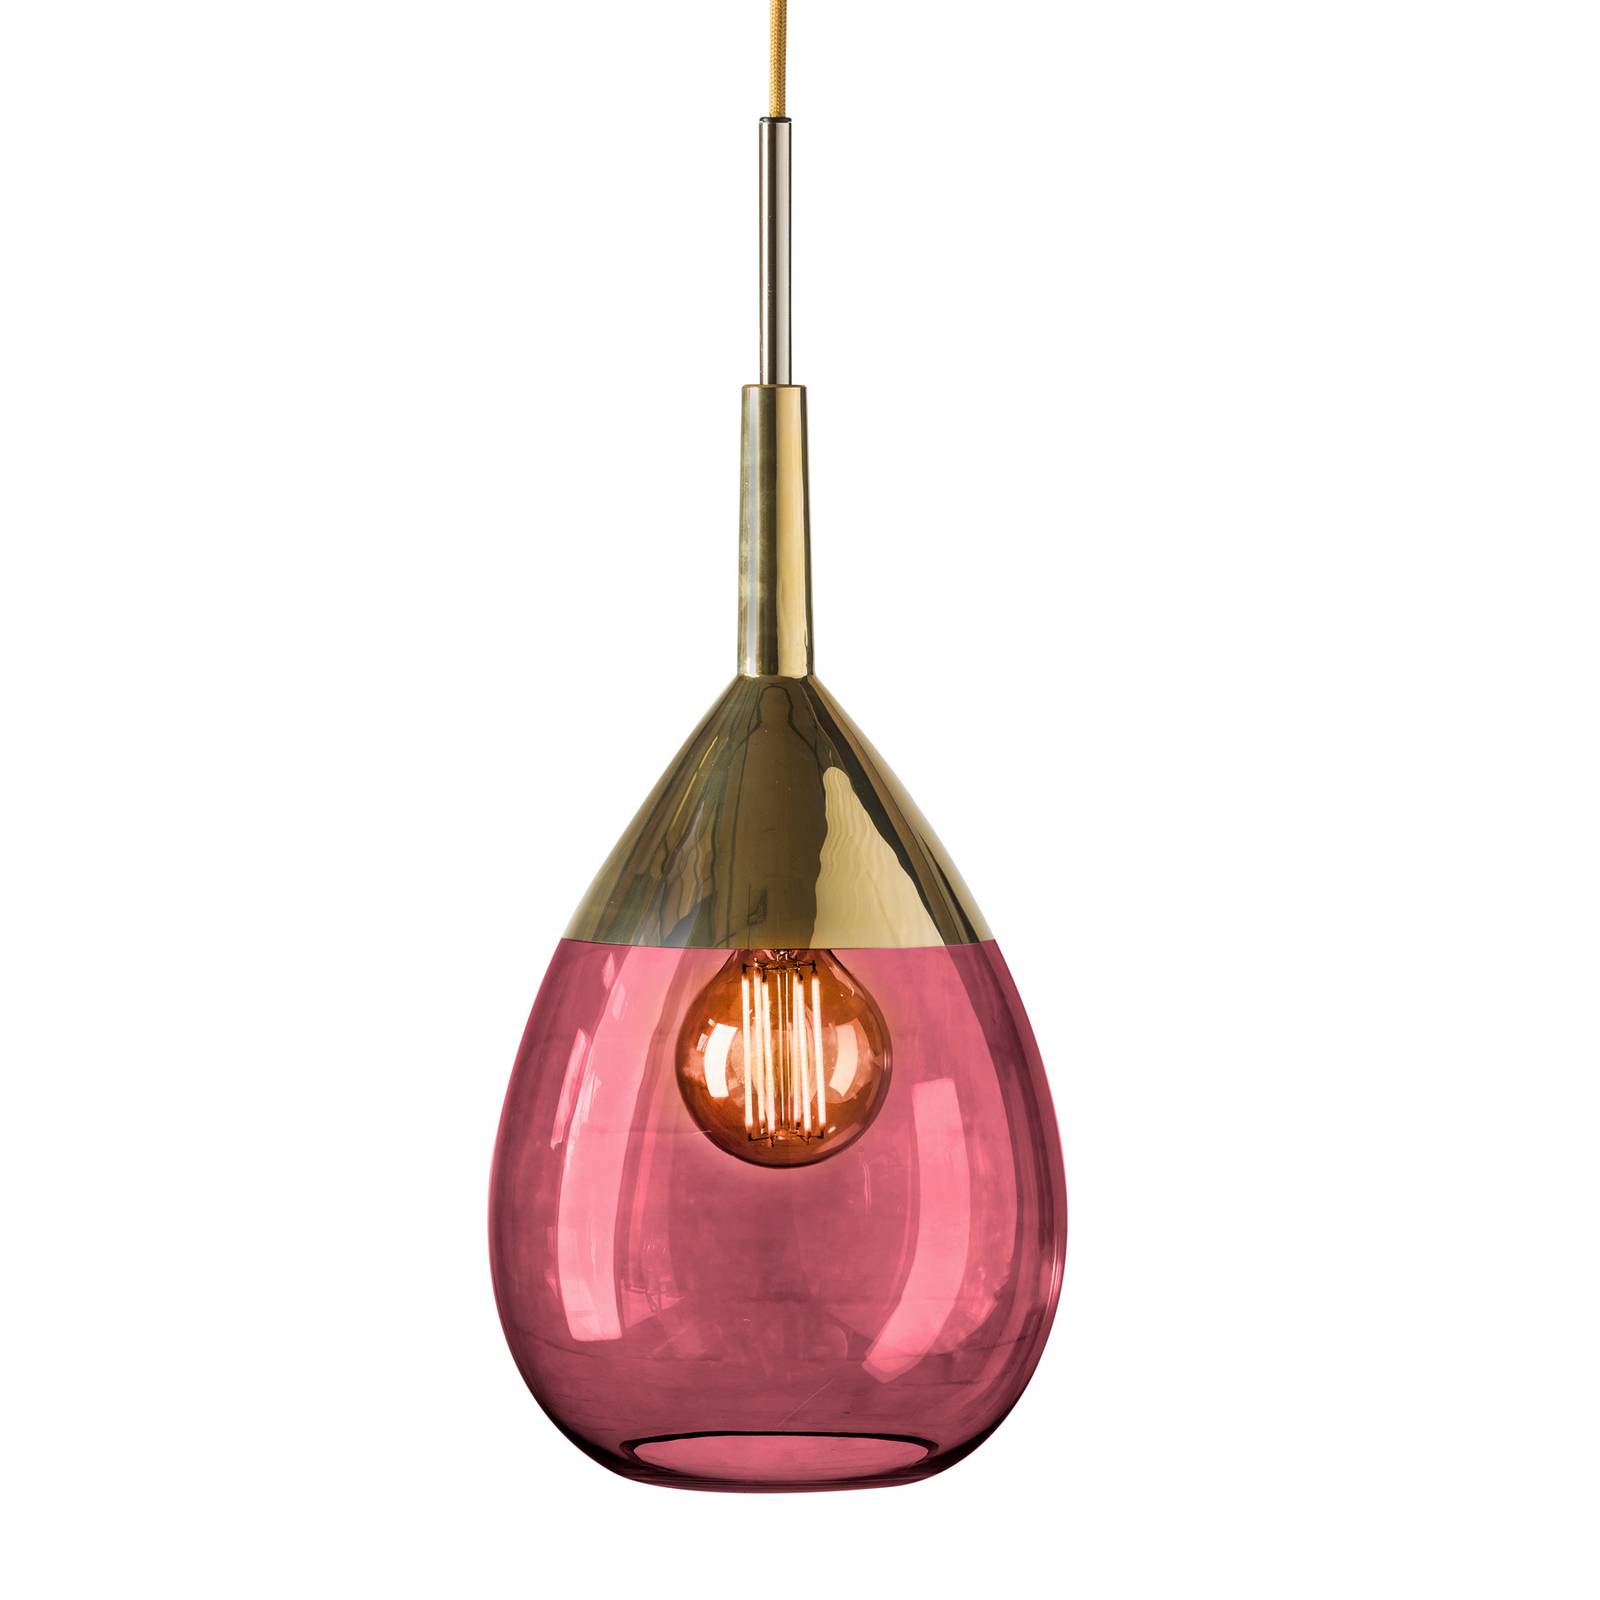 Ebb & flow lute m függő lámpa arany rubinpiros